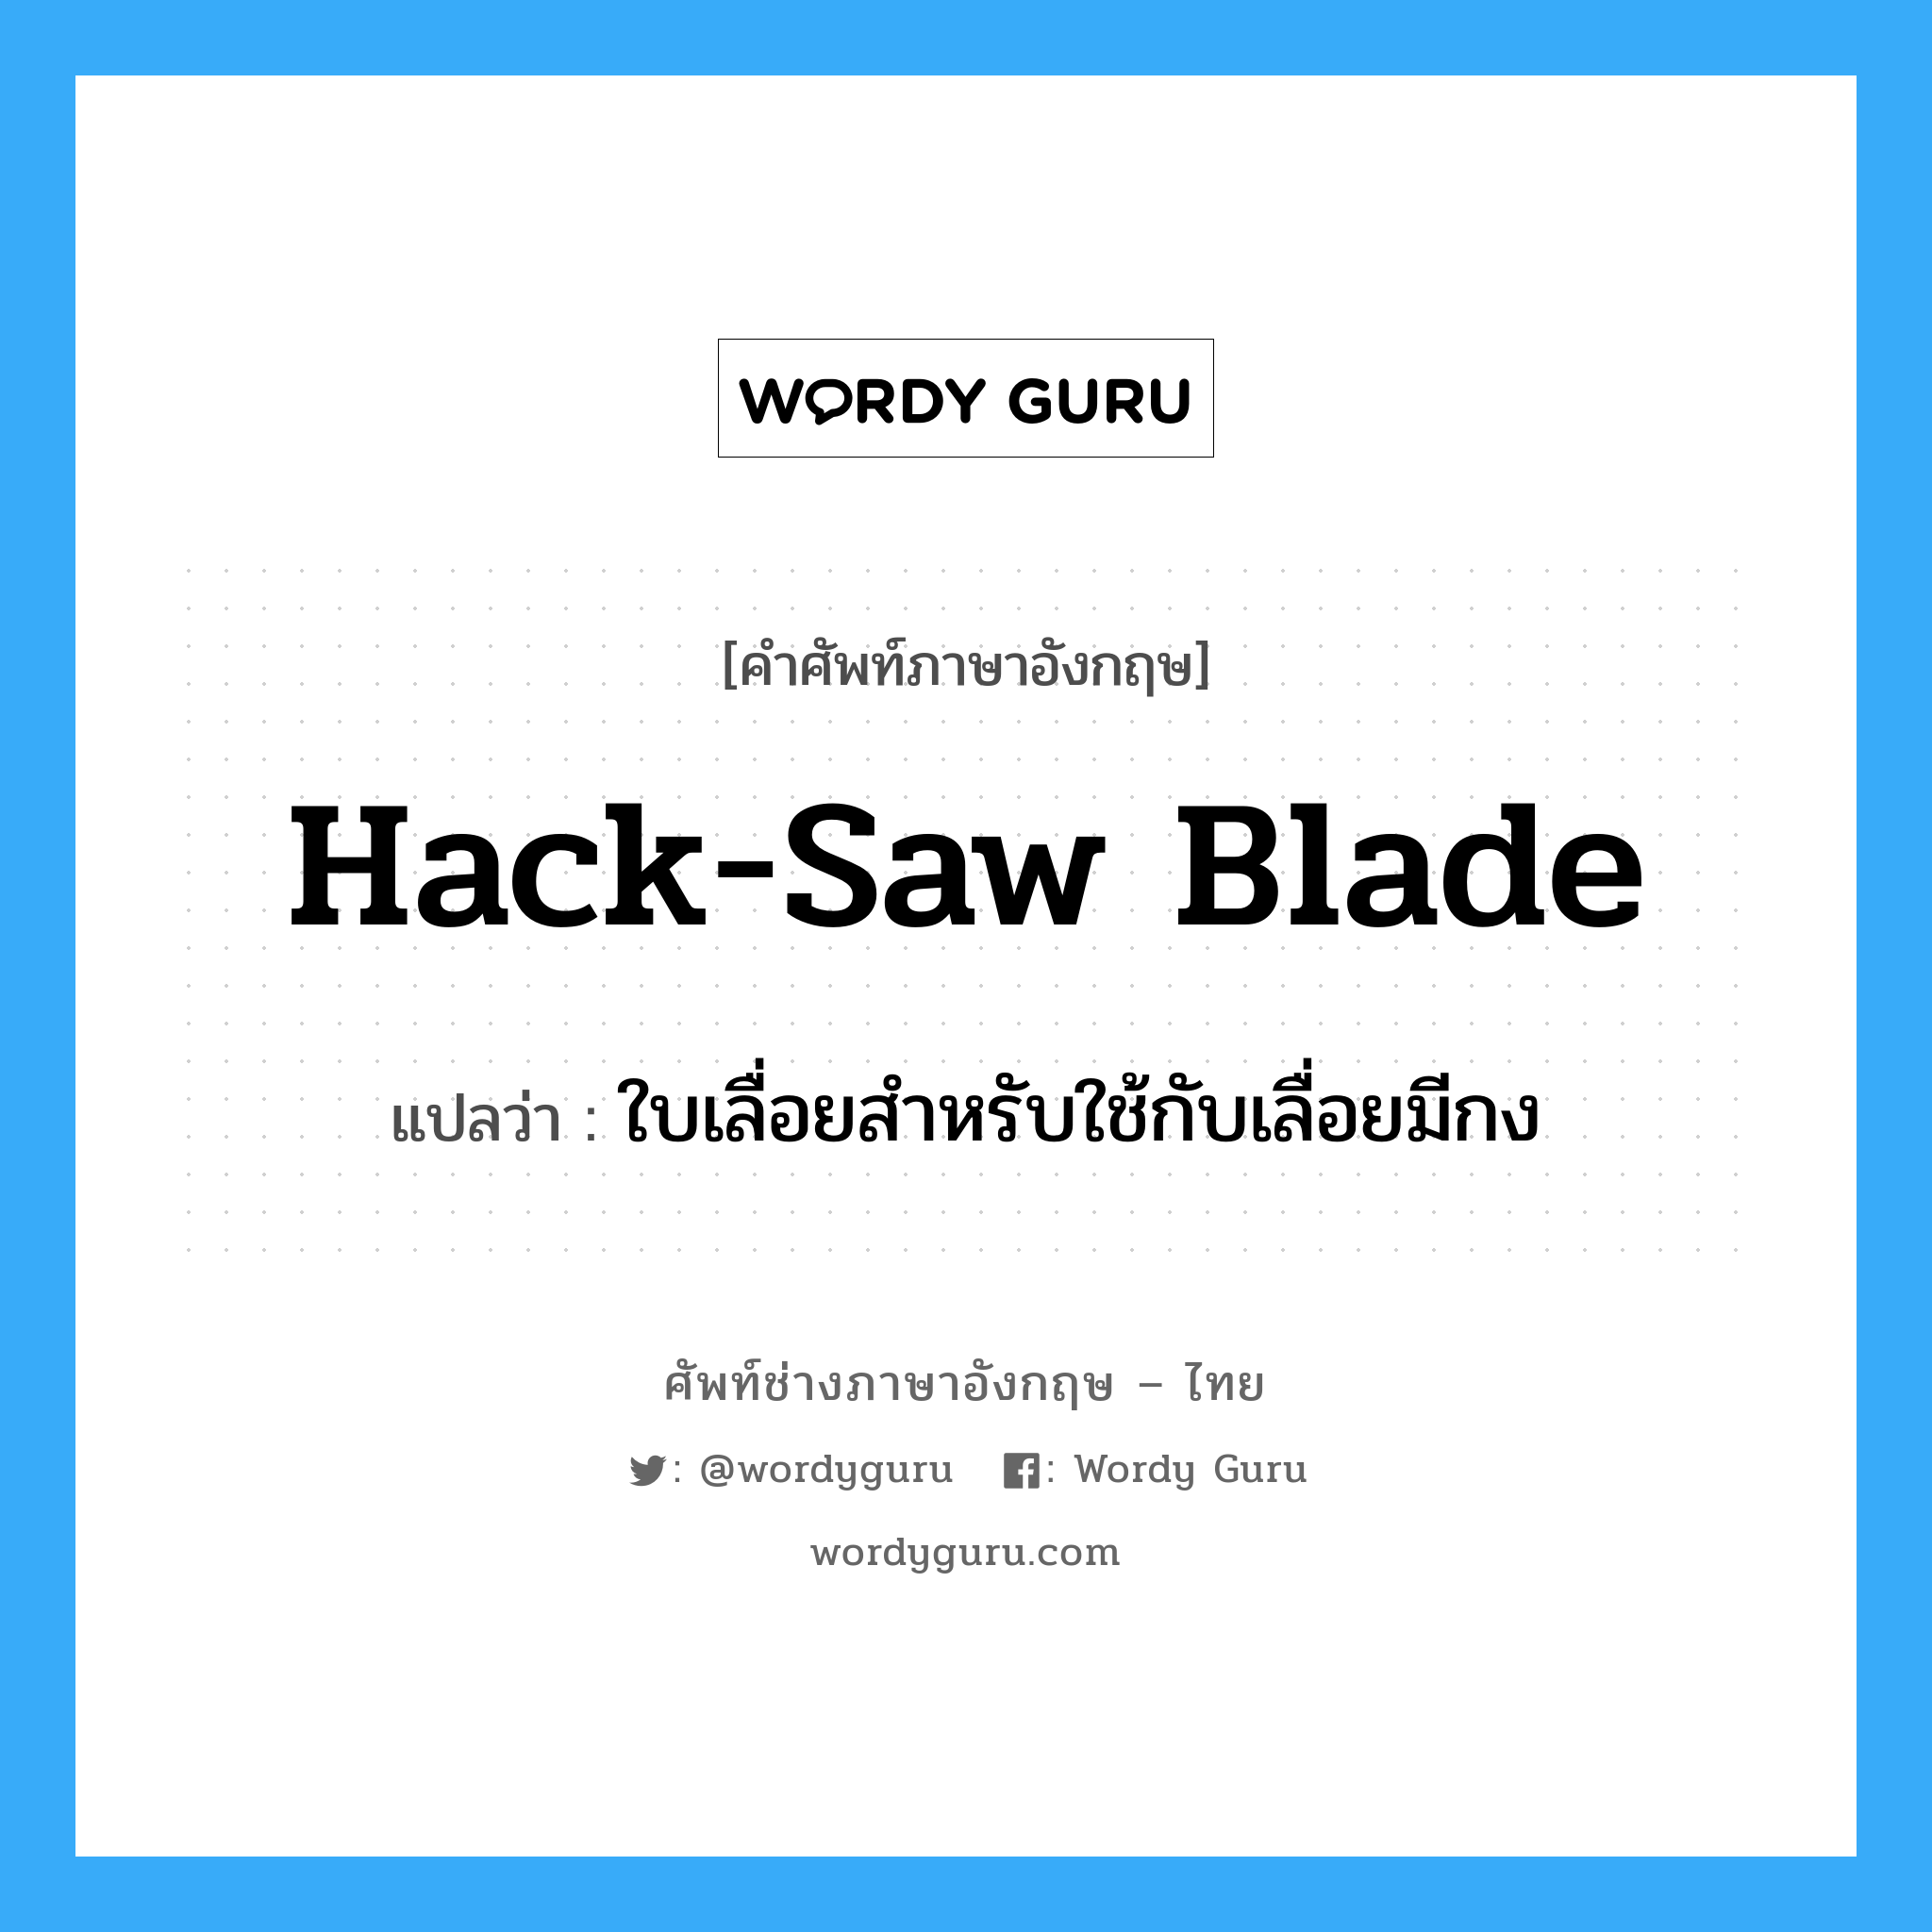 ใบเลื่อยสำหรับใช้กับเลื่อยมีกง ภาษาอังกฤษ?, คำศัพท์ช่างภาษาอังกฤษ - ไทย ใบเลื่อยสำหรับใช้กับเลื่อยมีกง คำศัพท์ภาษาอังกฤษ ใบเลื่อยสำหรับใช้กับเลื่อยมีกง แปลว่า hack-saw blade